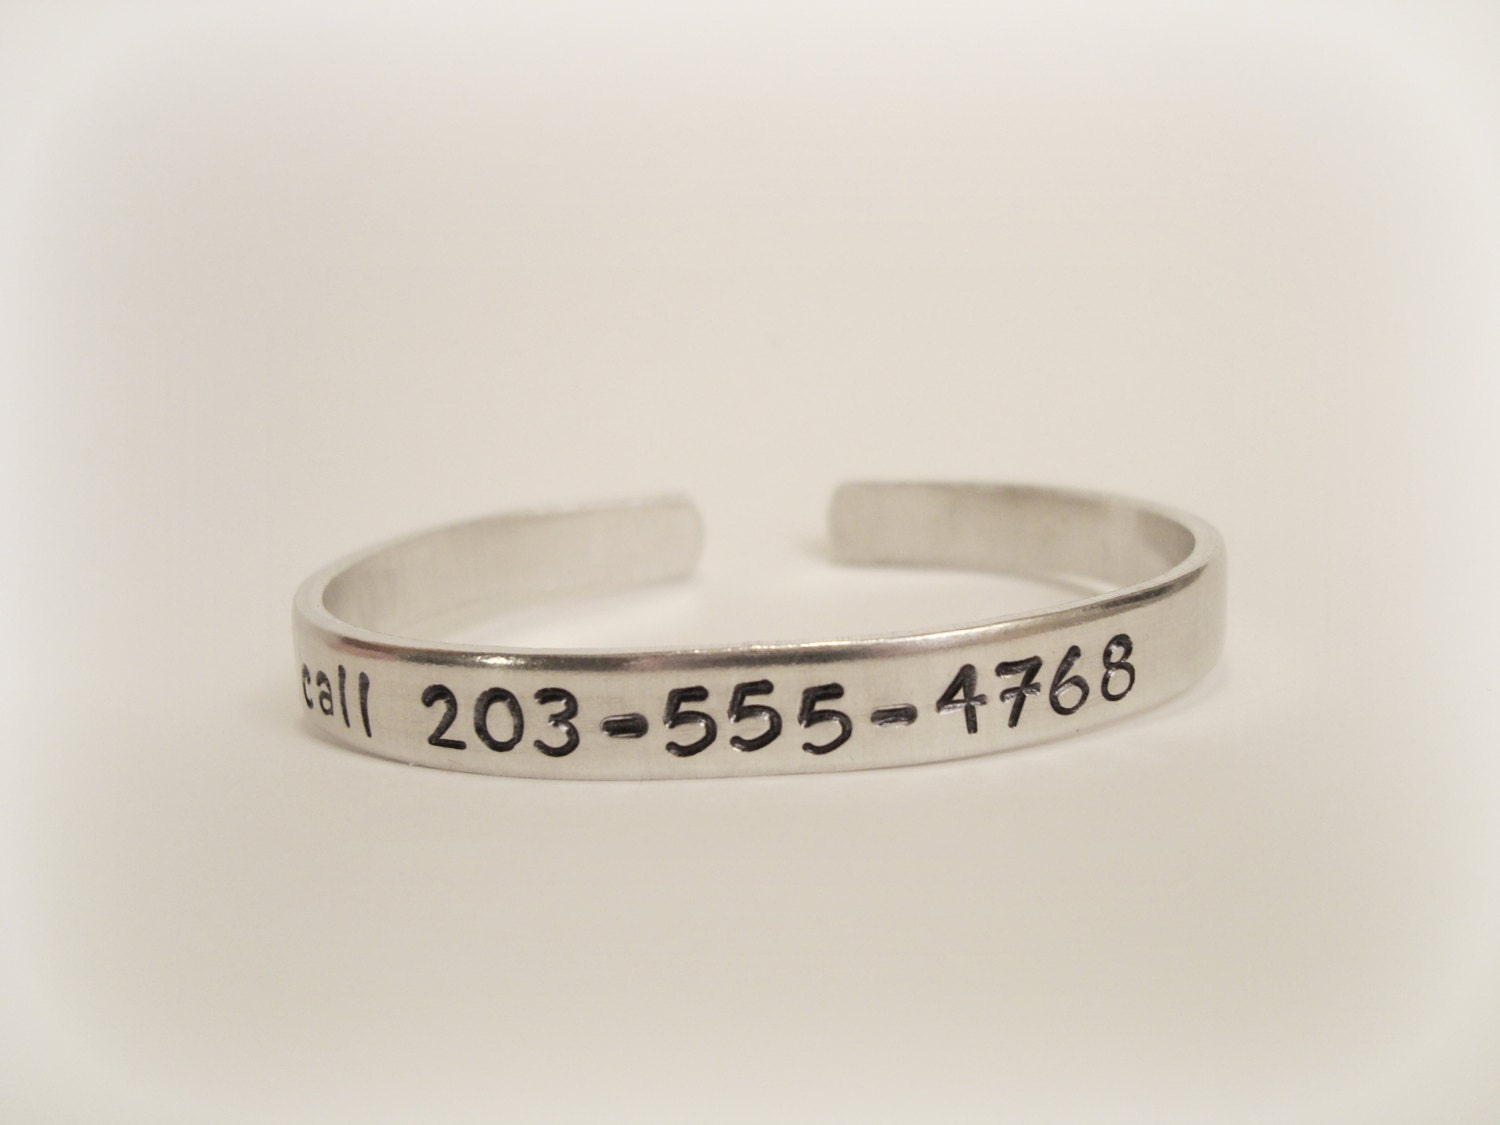 Phone Number Stamped Bracelet If Lost Child Bracelet Bendable Adjustable Aluminum